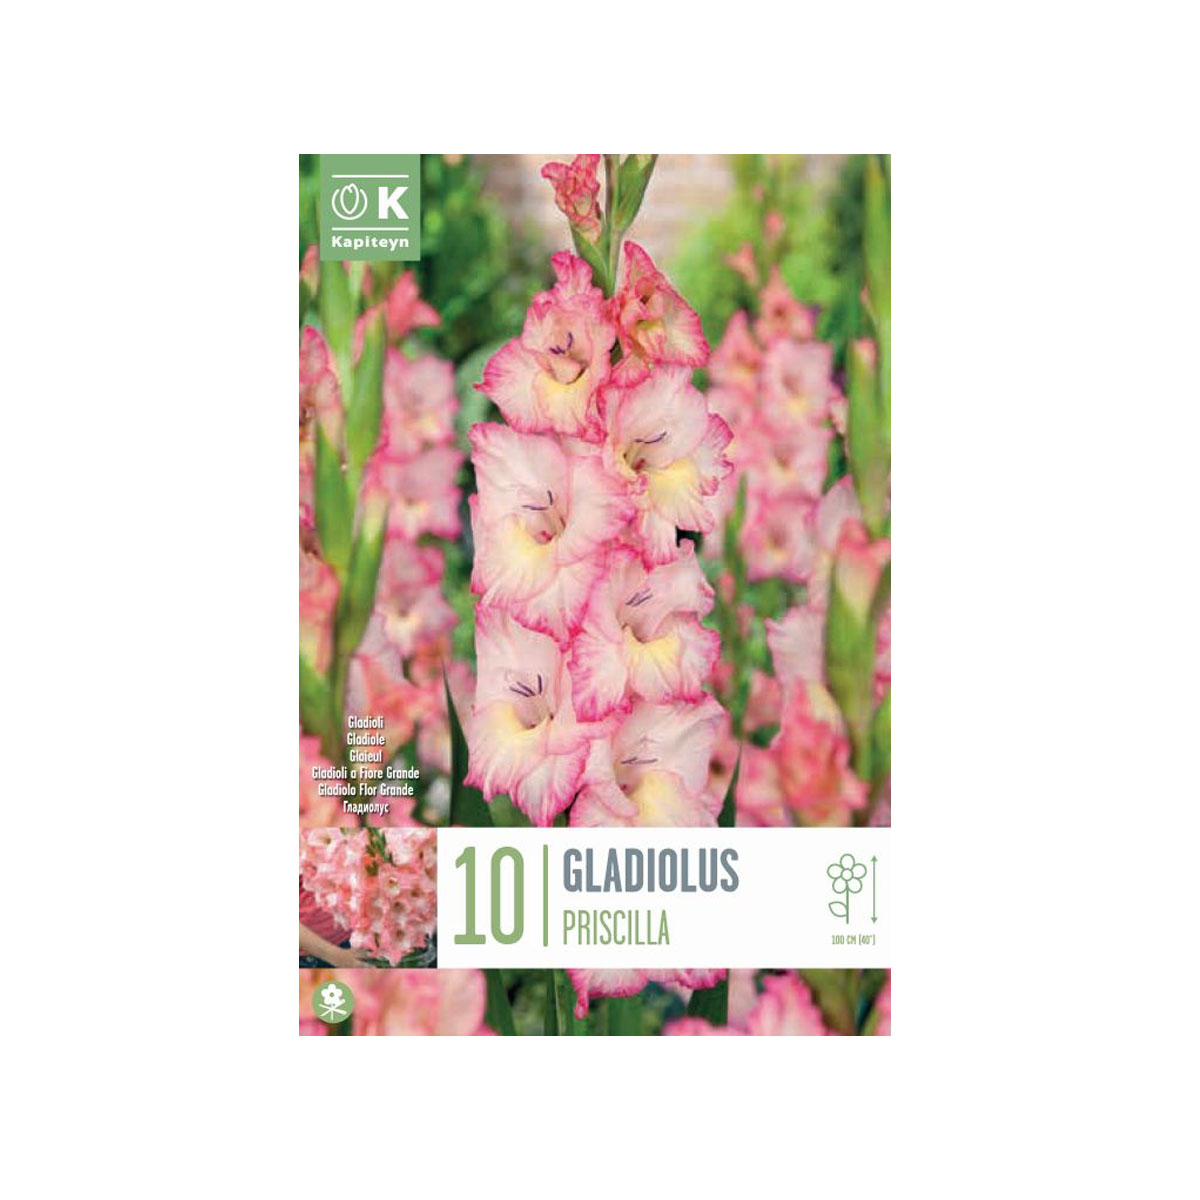 Gladiolus ‘Priscilla’ (10 bulbi)